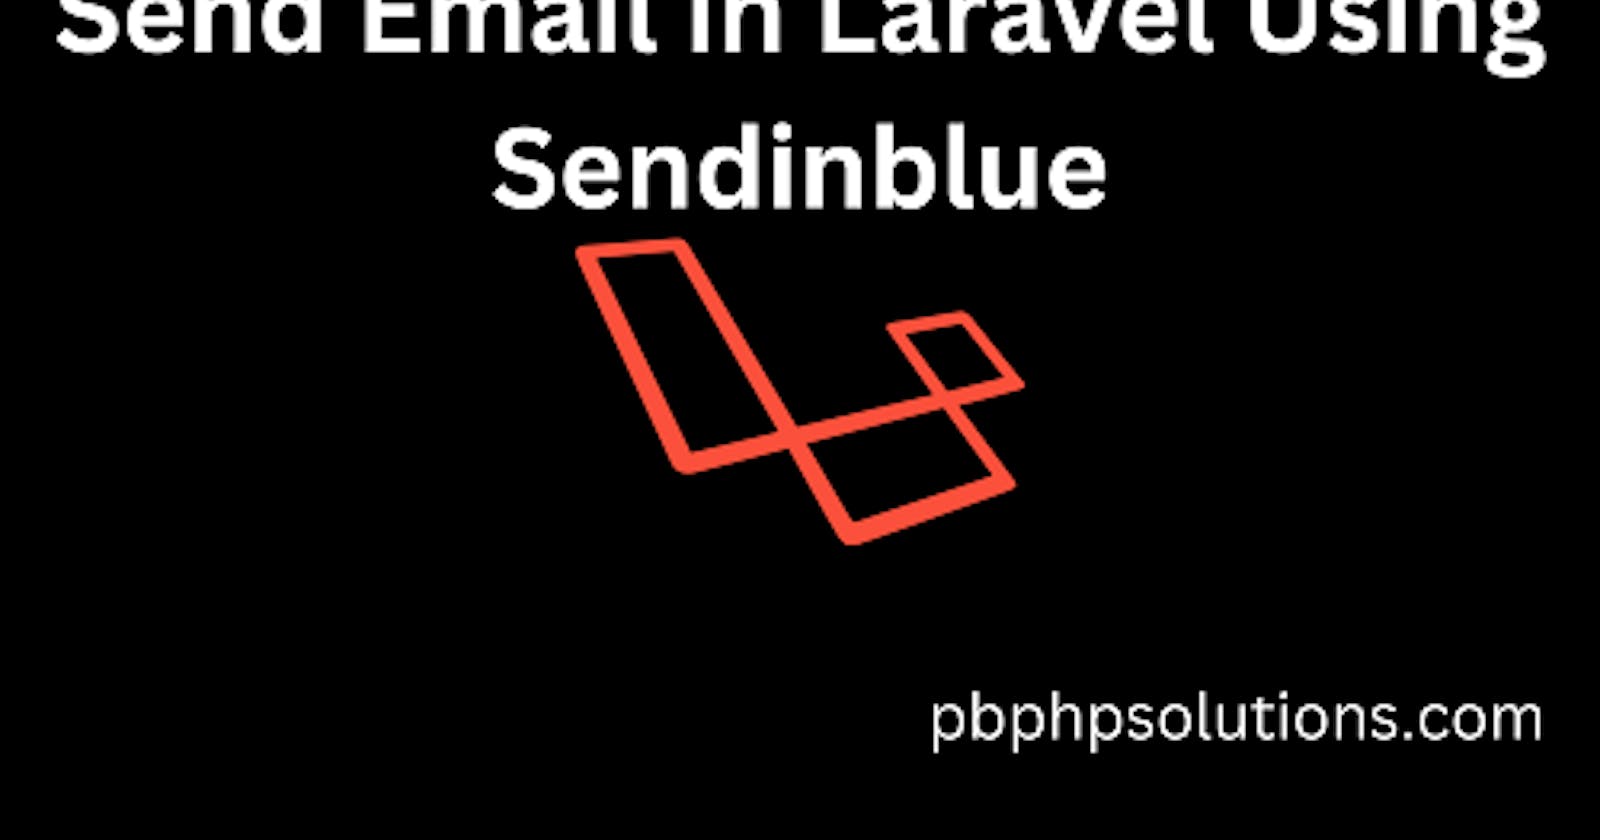 How to Send Email in Laravel Using Sendinblue